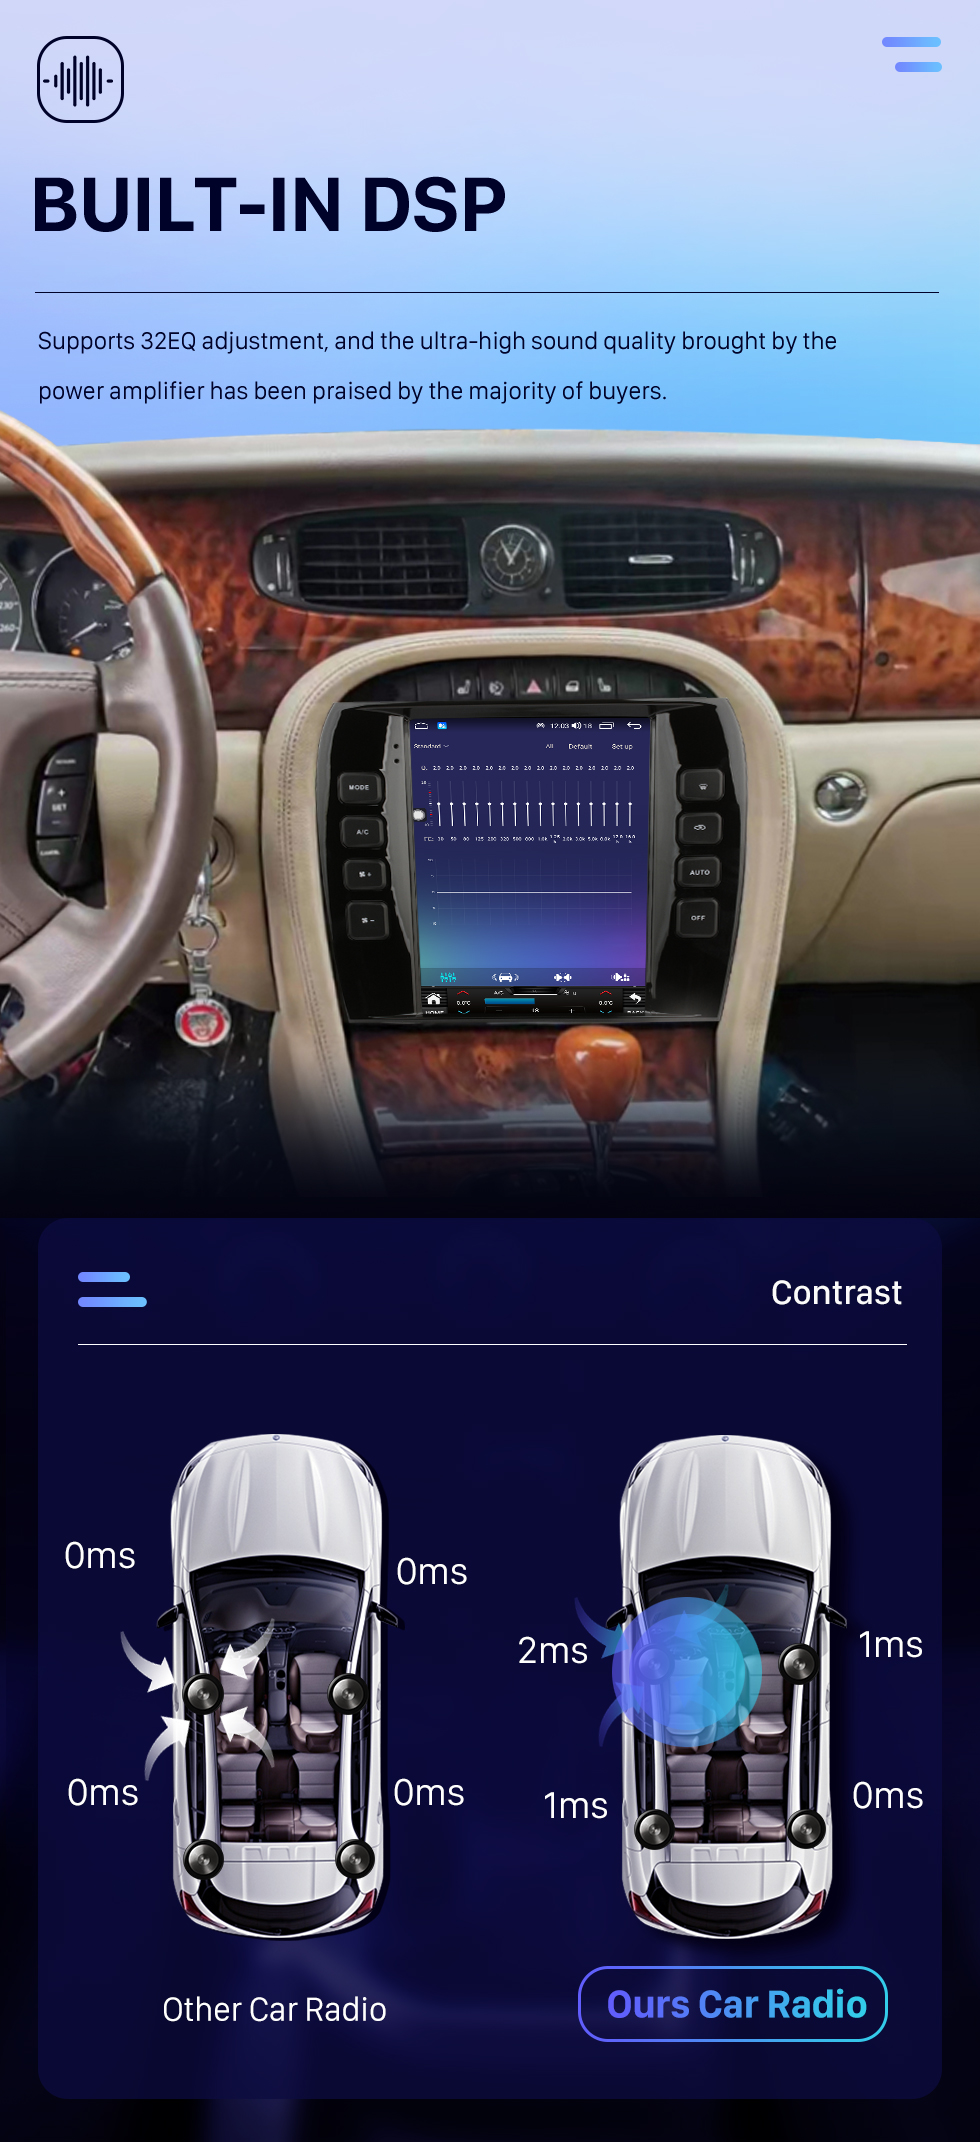 Seicane OEM 9,7-дюймовый Android 10.0 GPS-навигатор для Jaguar XJ Stereo 2004-2008 годов с поддержкой Carplay Bluetooth AHD-камера Управление рулевым колесом